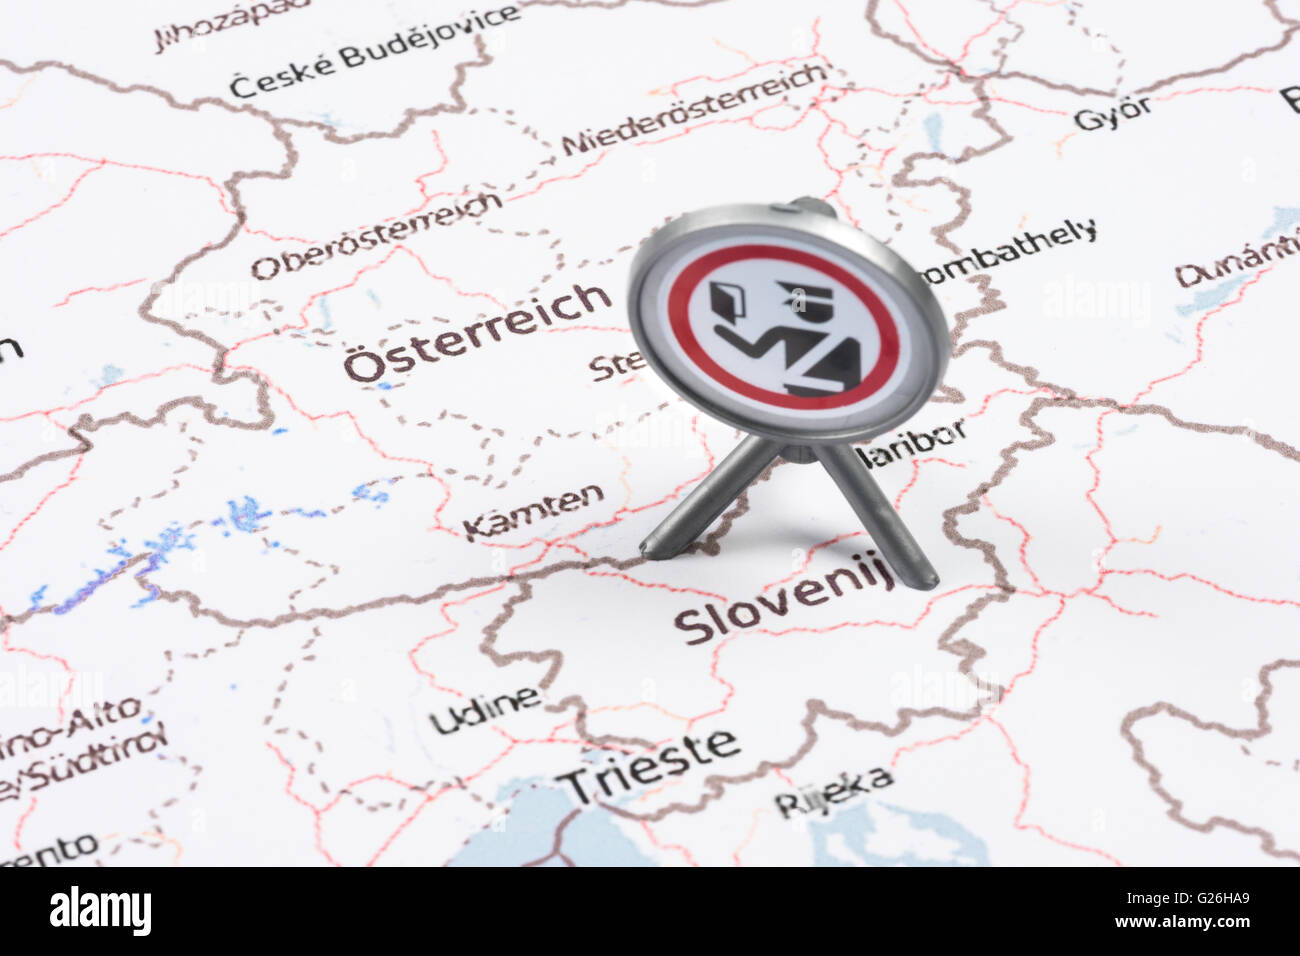 EU-Migranten Krise österreichischen-slowenischen Grenze dokumentiert Kontrolle Stockfoto